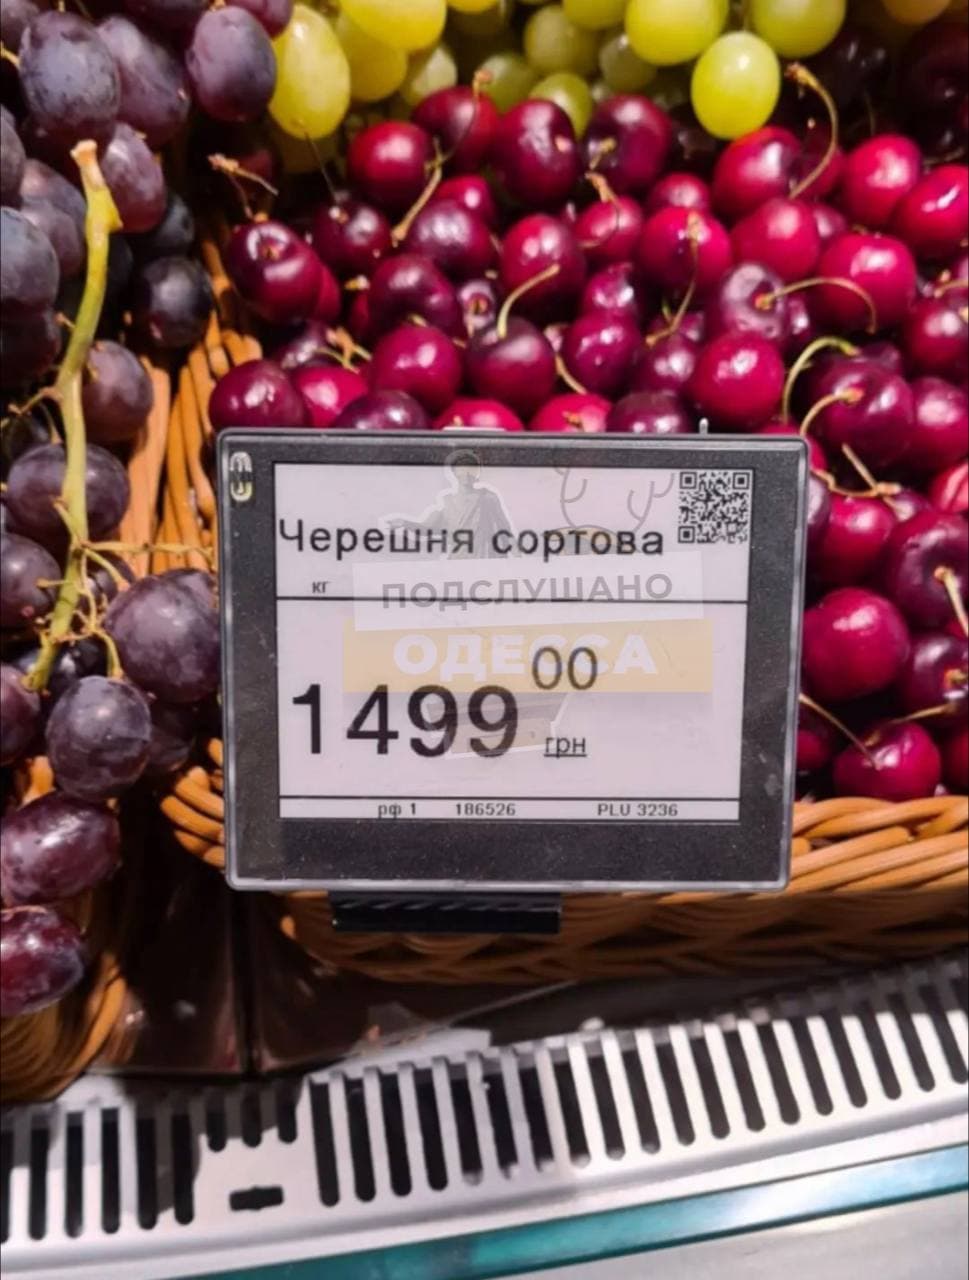 Украинский супермаркет удивил ценами на черешню: всего 1499 гривен